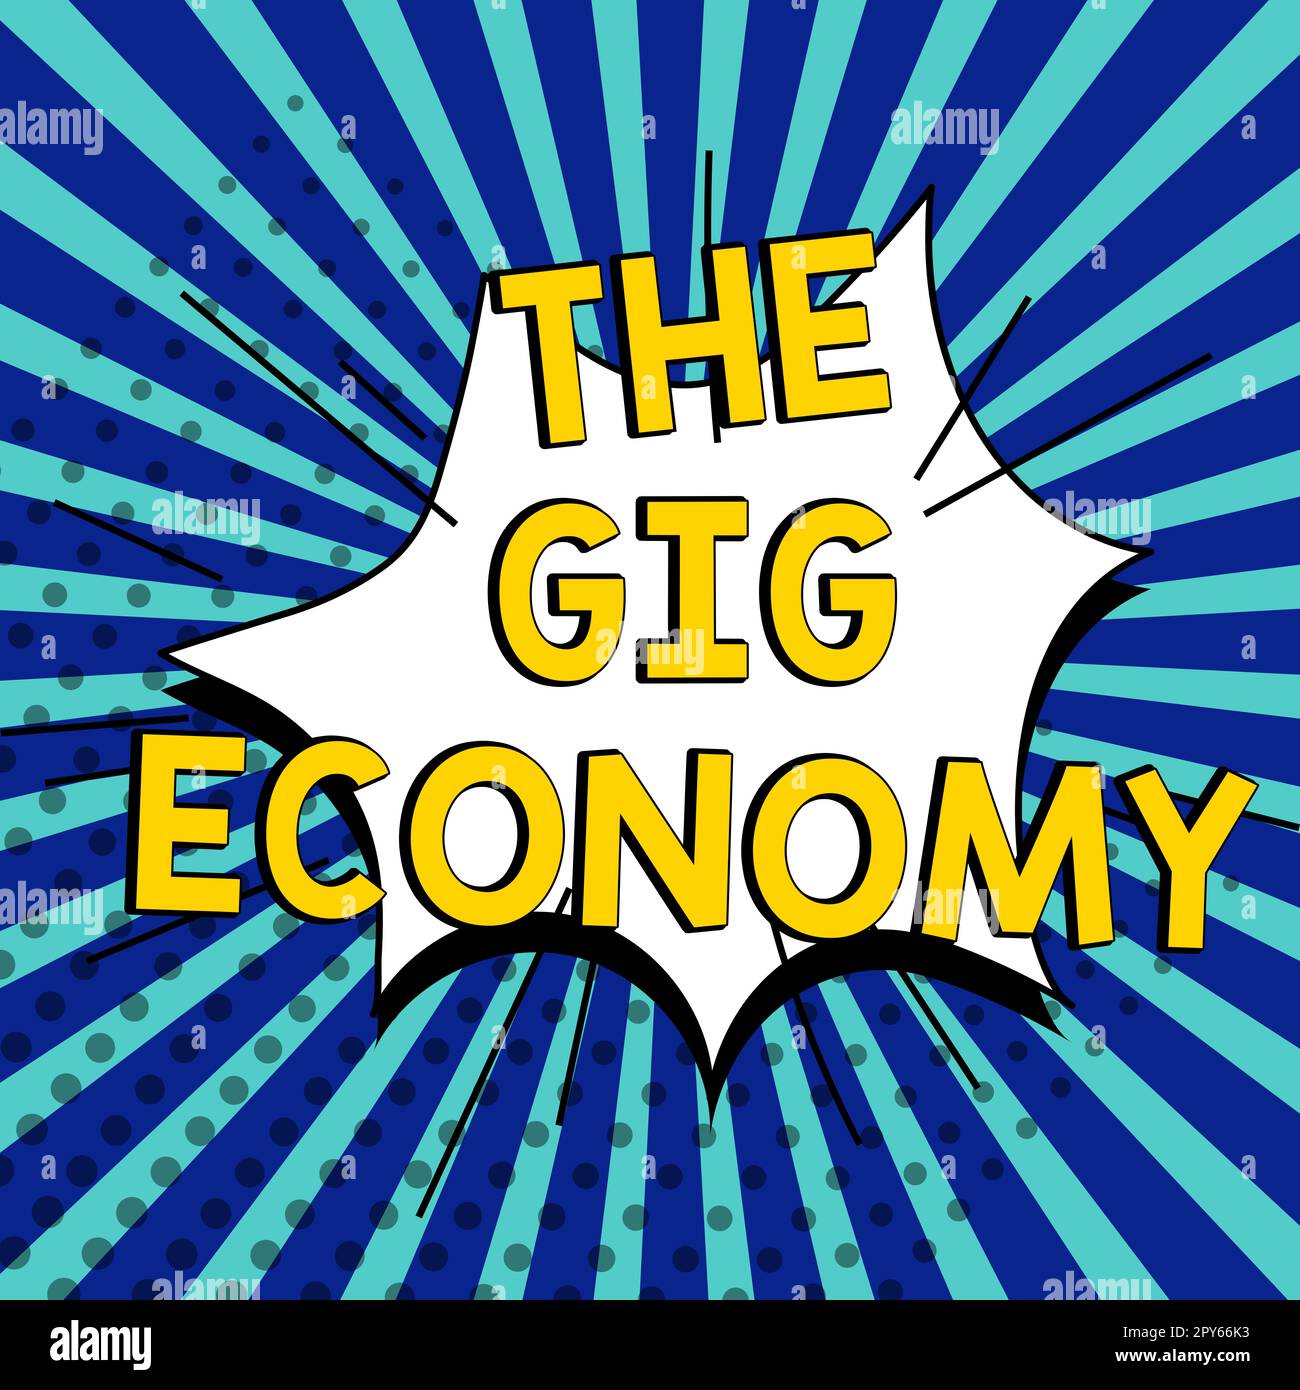 Symbole textuel montrant la Gig Economy. Aperçu du marché des contrats à court terme travail indépendant temporaire Banque D'Images